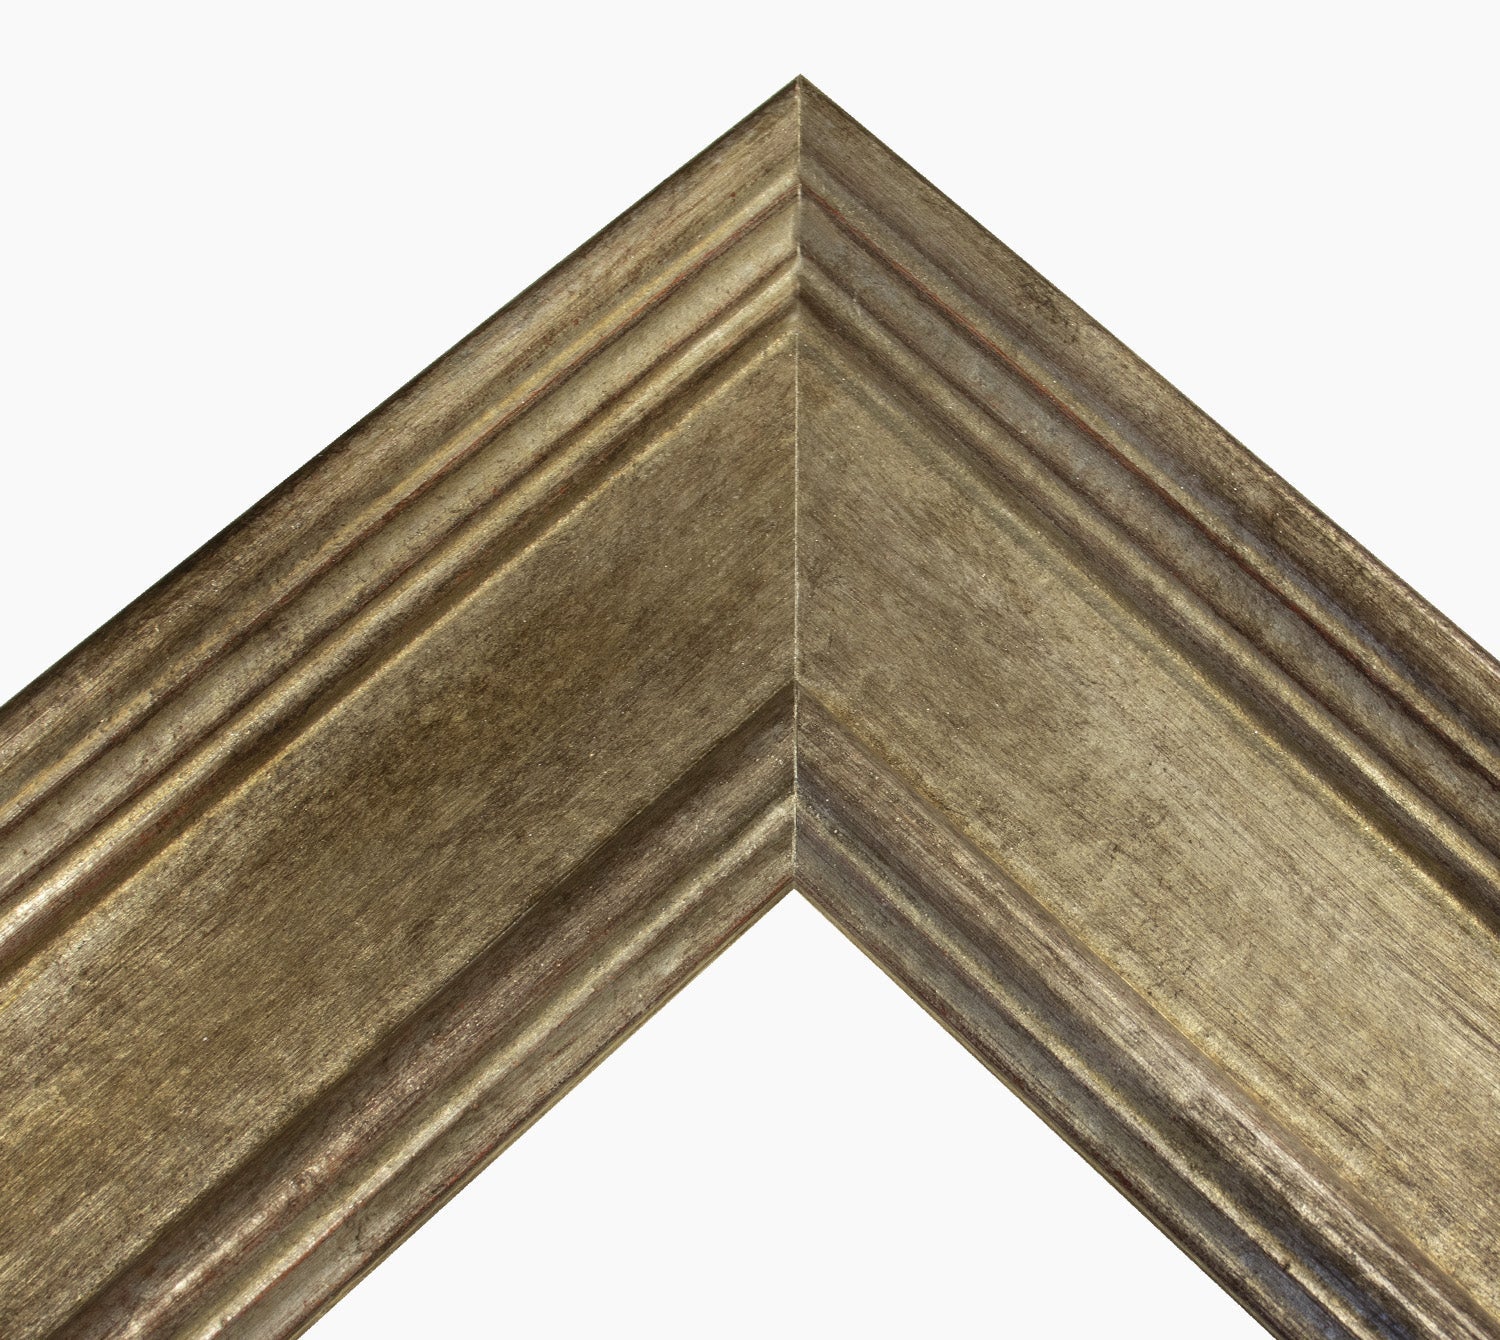 740.231 cadre en bois à la feuille d'argent antique mesure de profil 100x50 mm Lombarda cornici S.n.c.